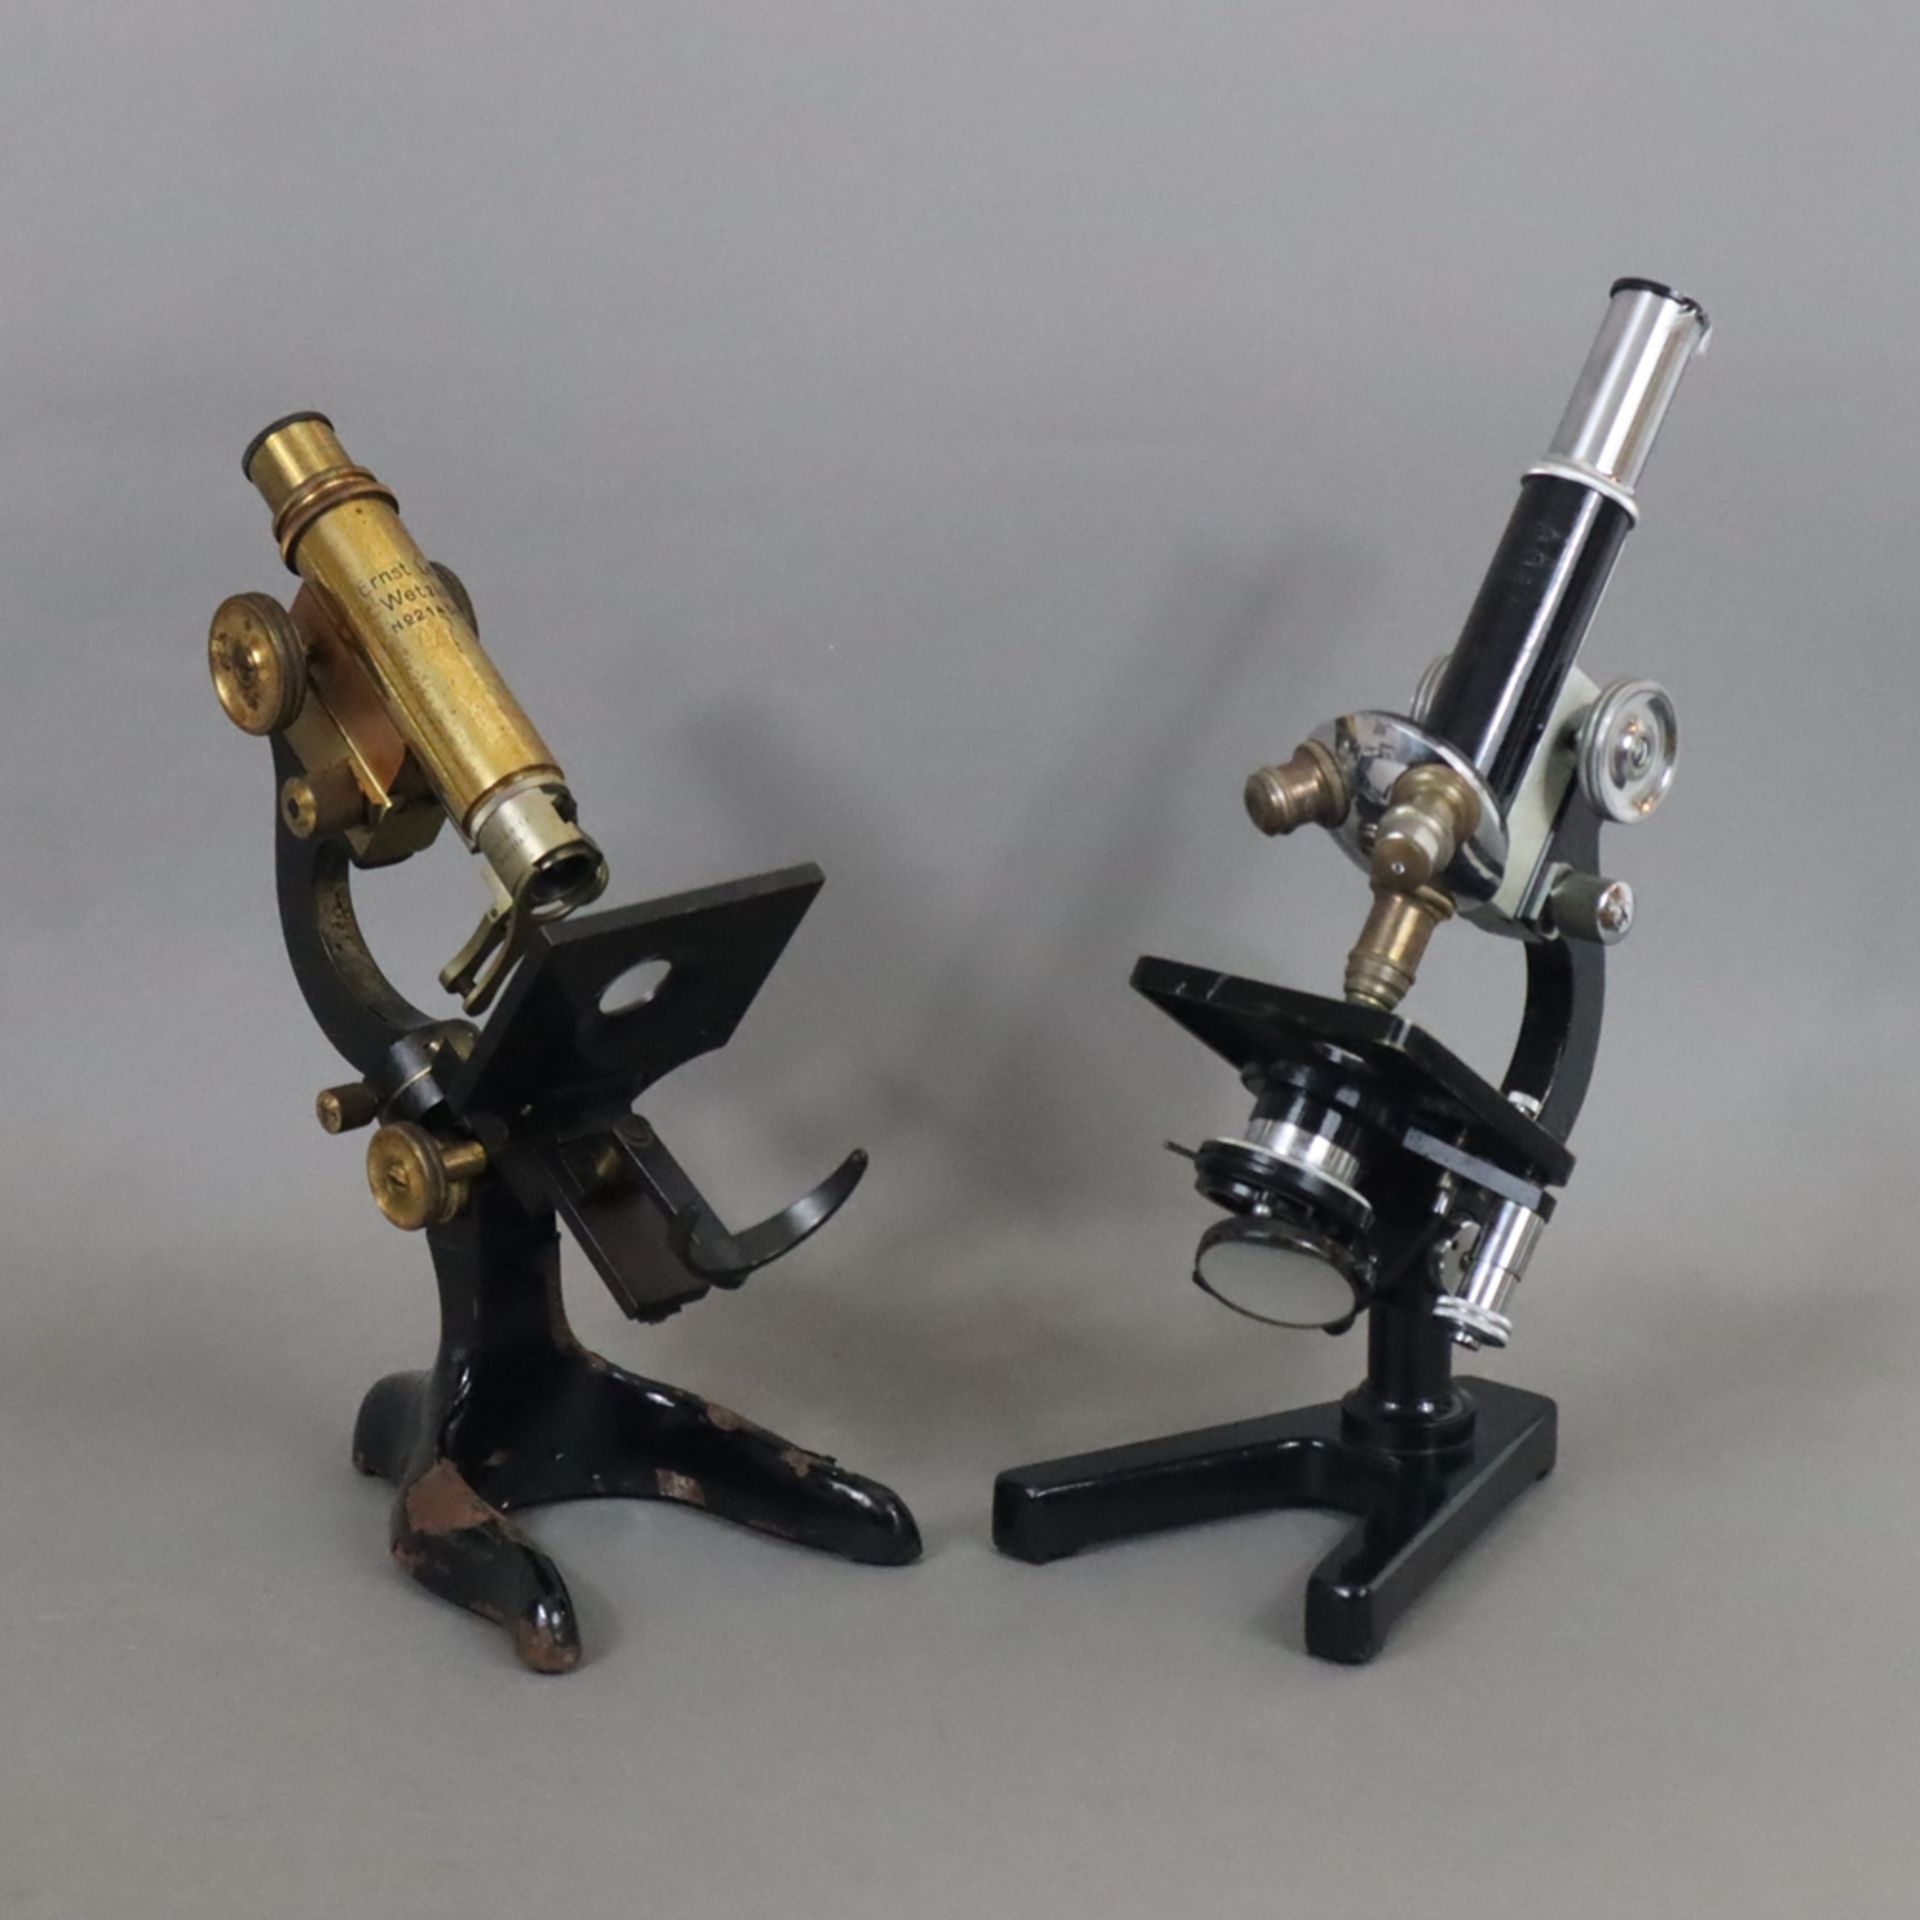 Zwei Mikroskope mit Zubehör - Ernst Leitz Wetzlar, am Tubus signiert mit Seriennummer "214567", Spi